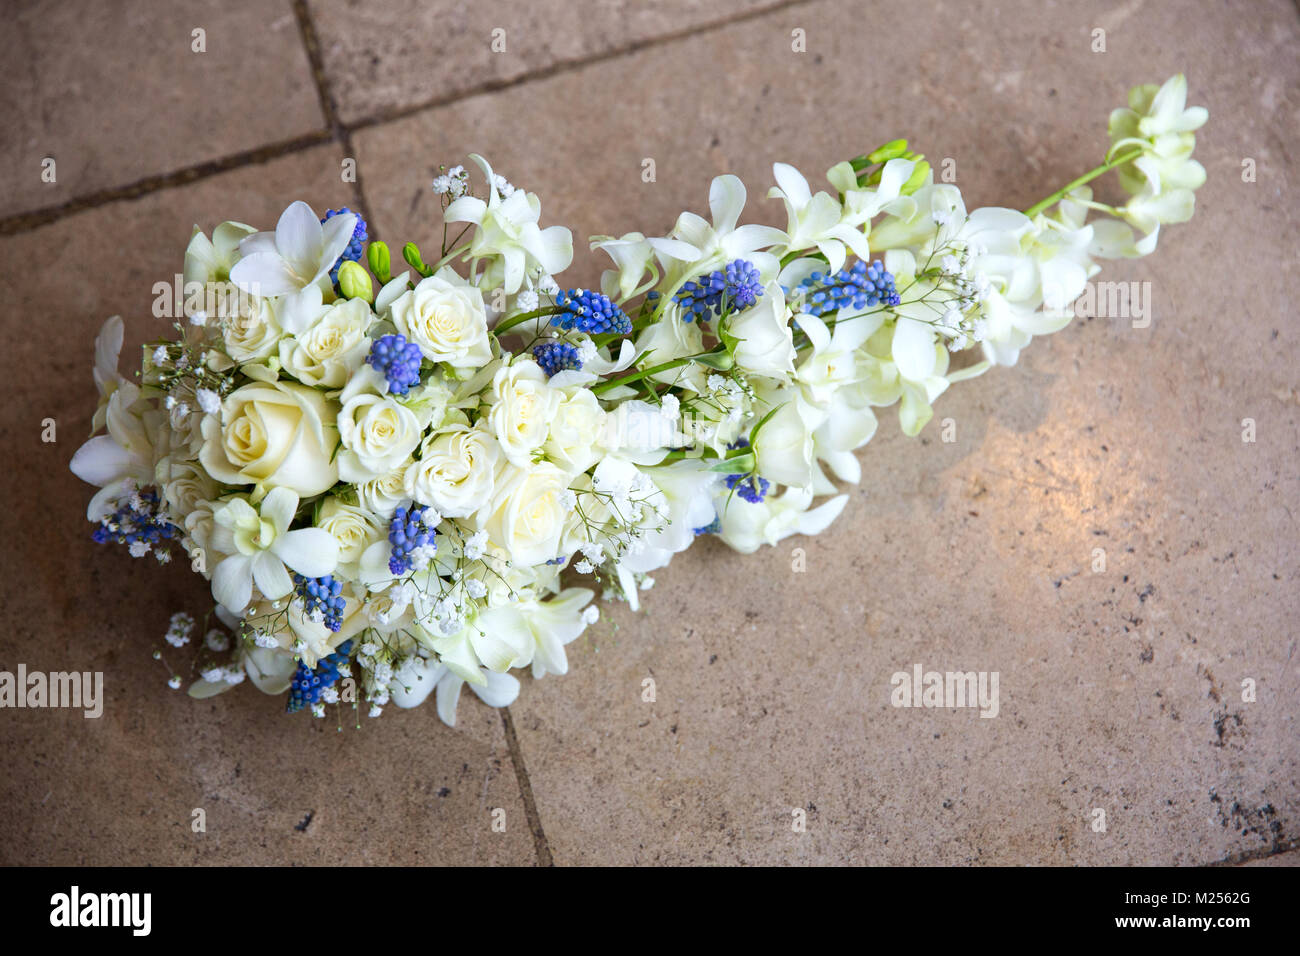 Boda nupcial bouquet blanco sobre las baldosas del piso, vista elevada Foto de stock